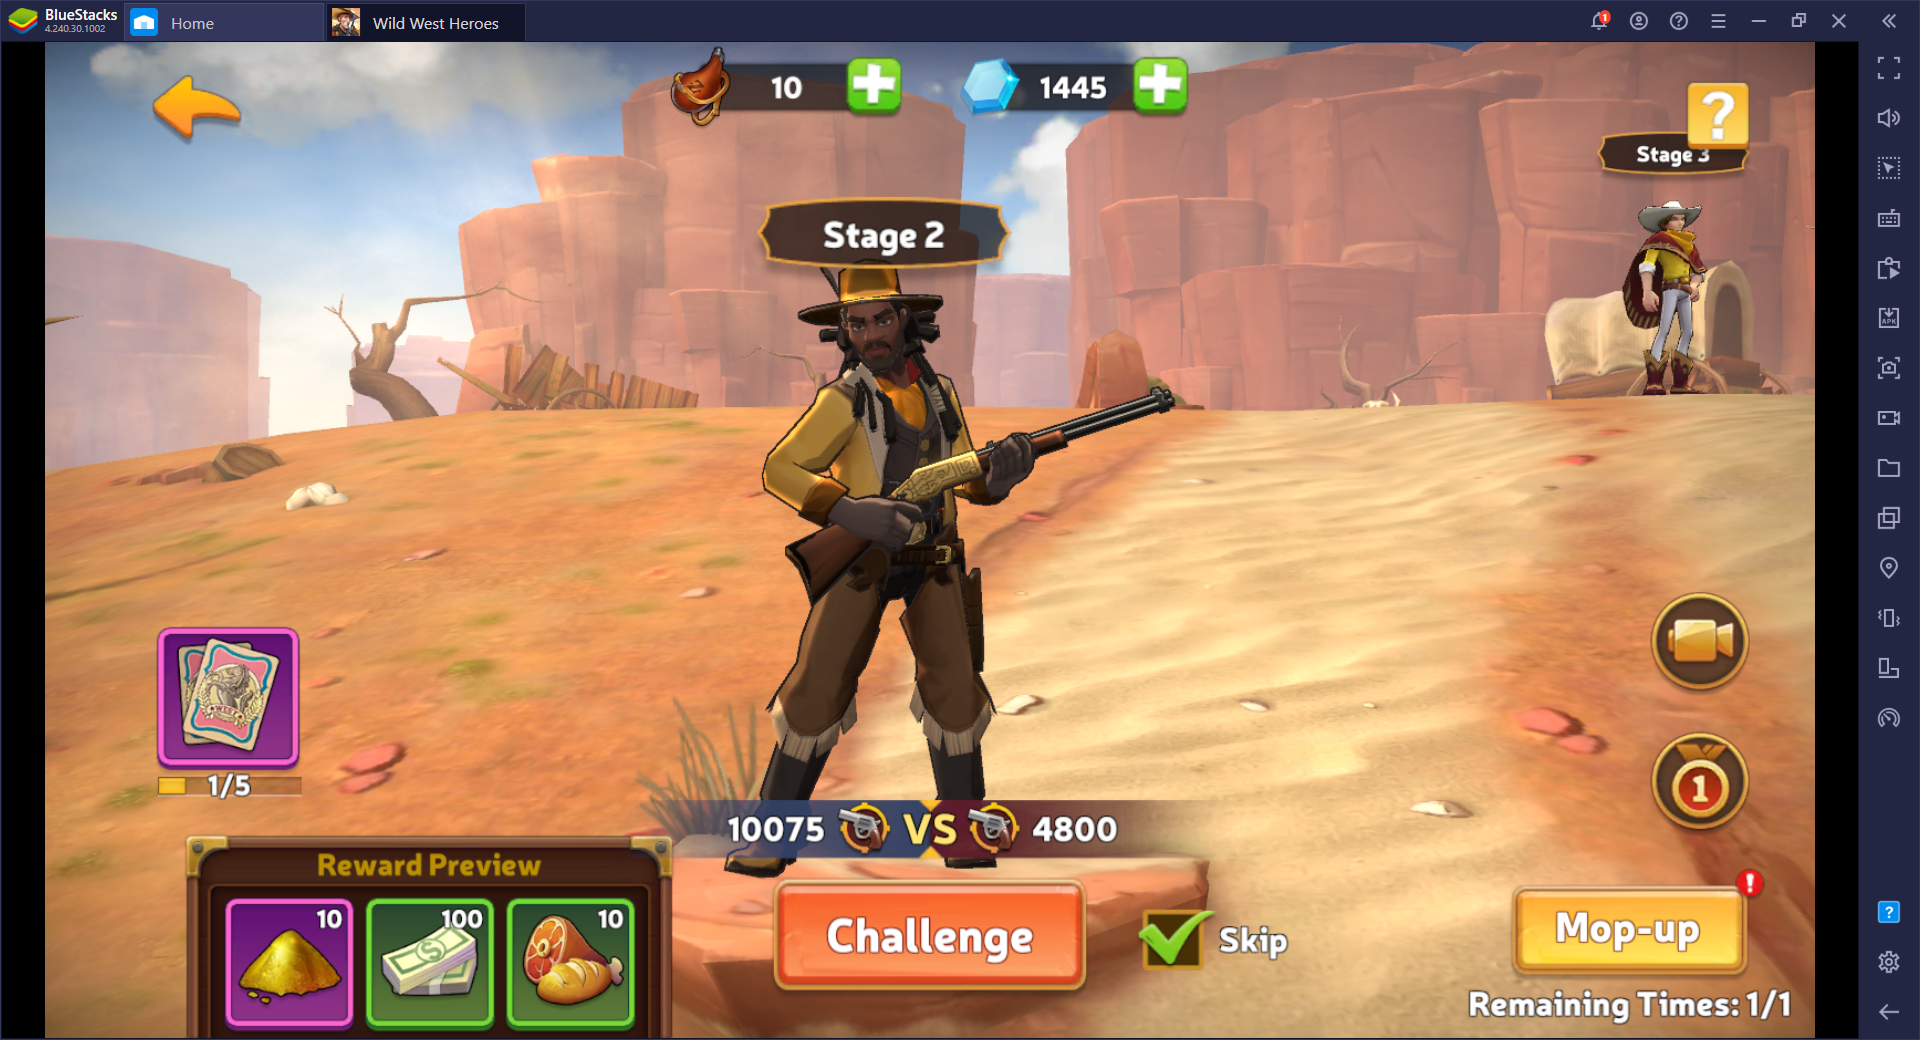 Selamatkan Wild West - Cara Main Wild West Heroes di PC dengan BlueStacks